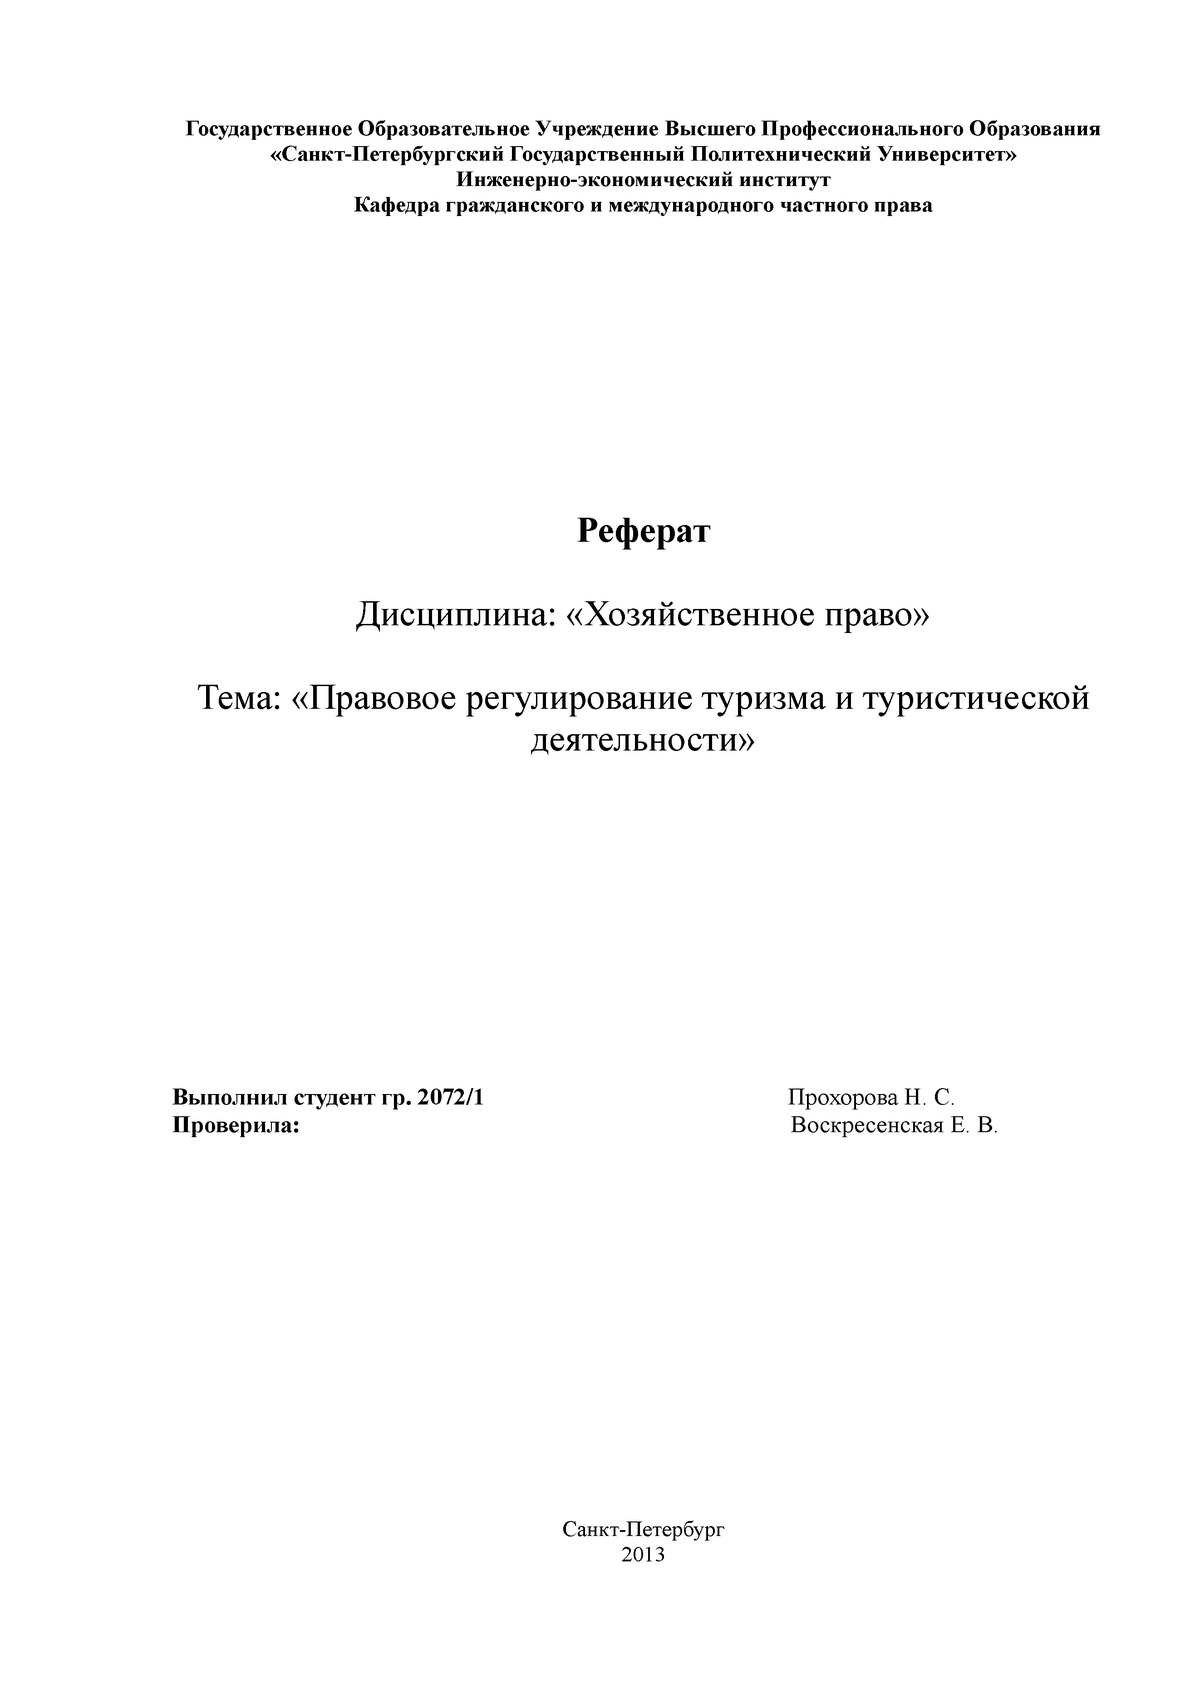 Реферат: Законодательство Российской Федерации, регулирующее предпринимательскую деятельность